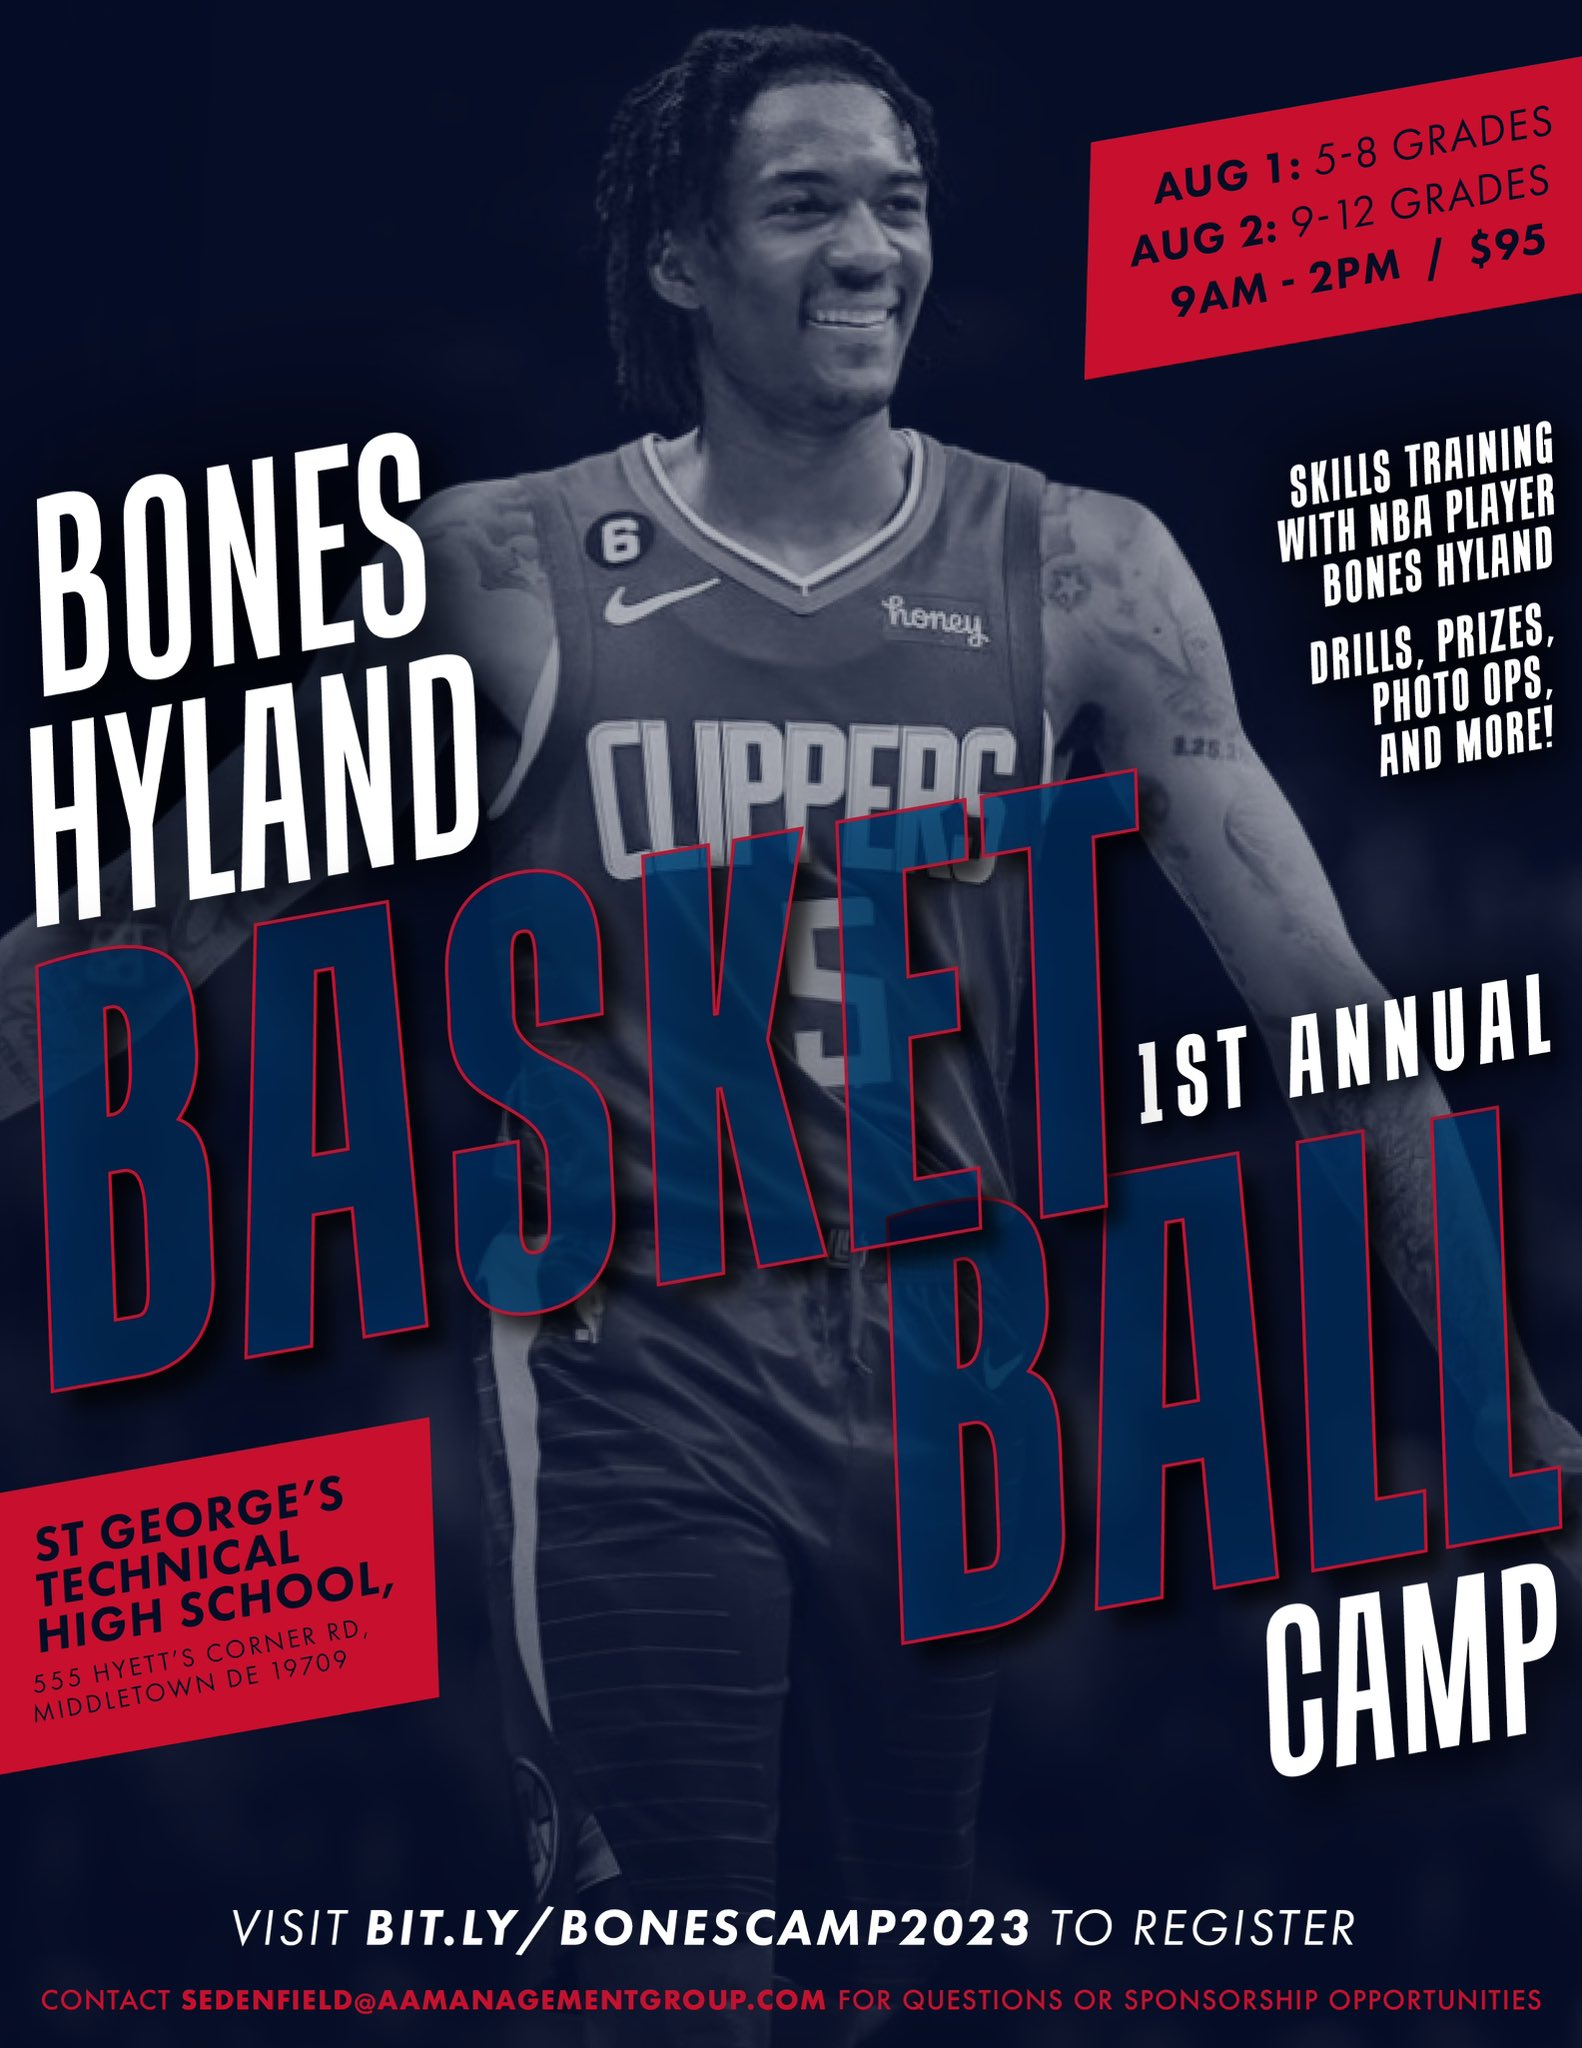 Hyland Basketball Jersey